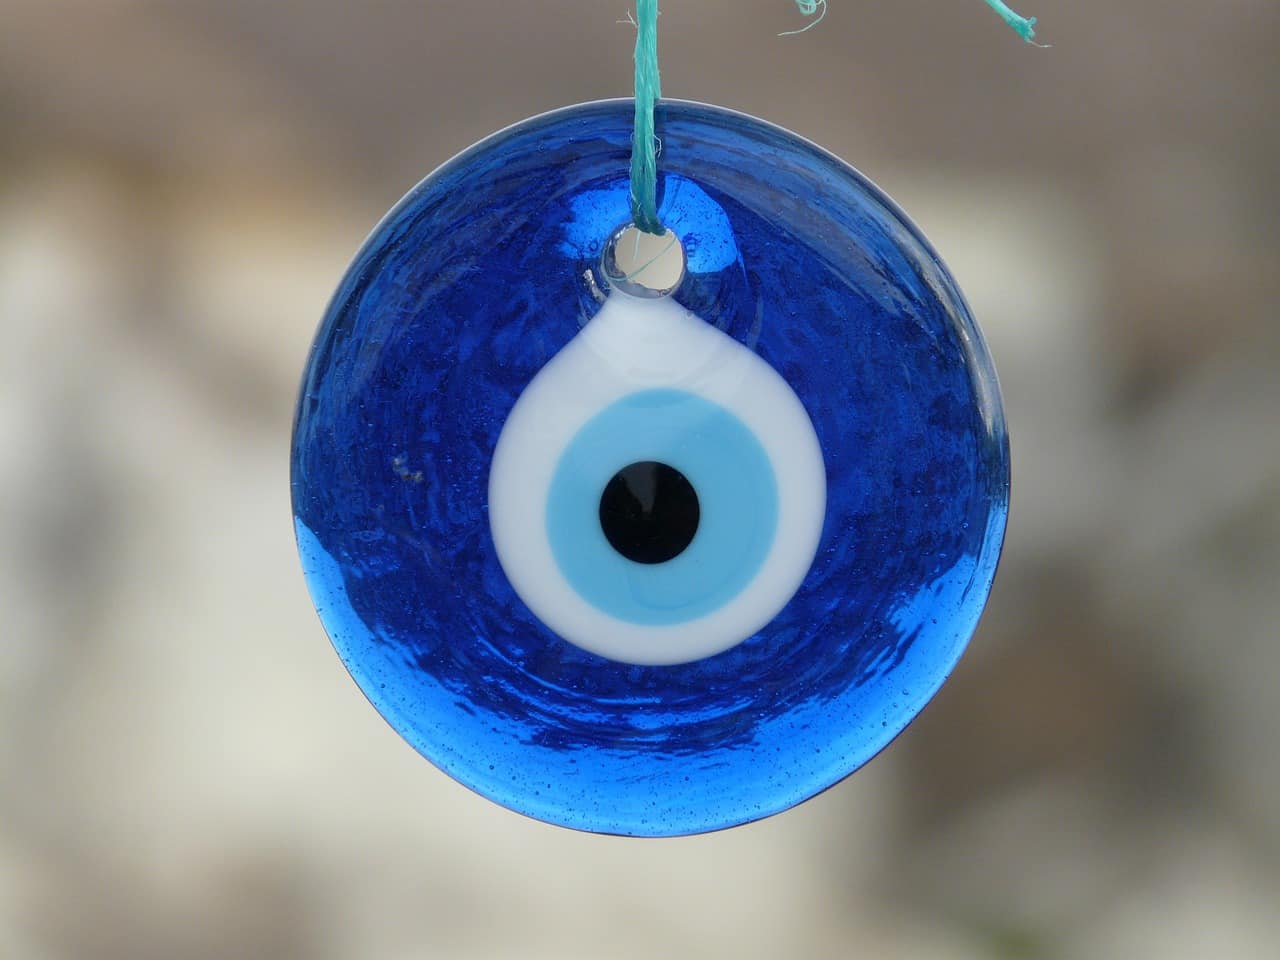 Amulette du Nazar boncuk, représentant une sorte d’œil noir, bleu ciel et blanc sur un fond bleu foncé.